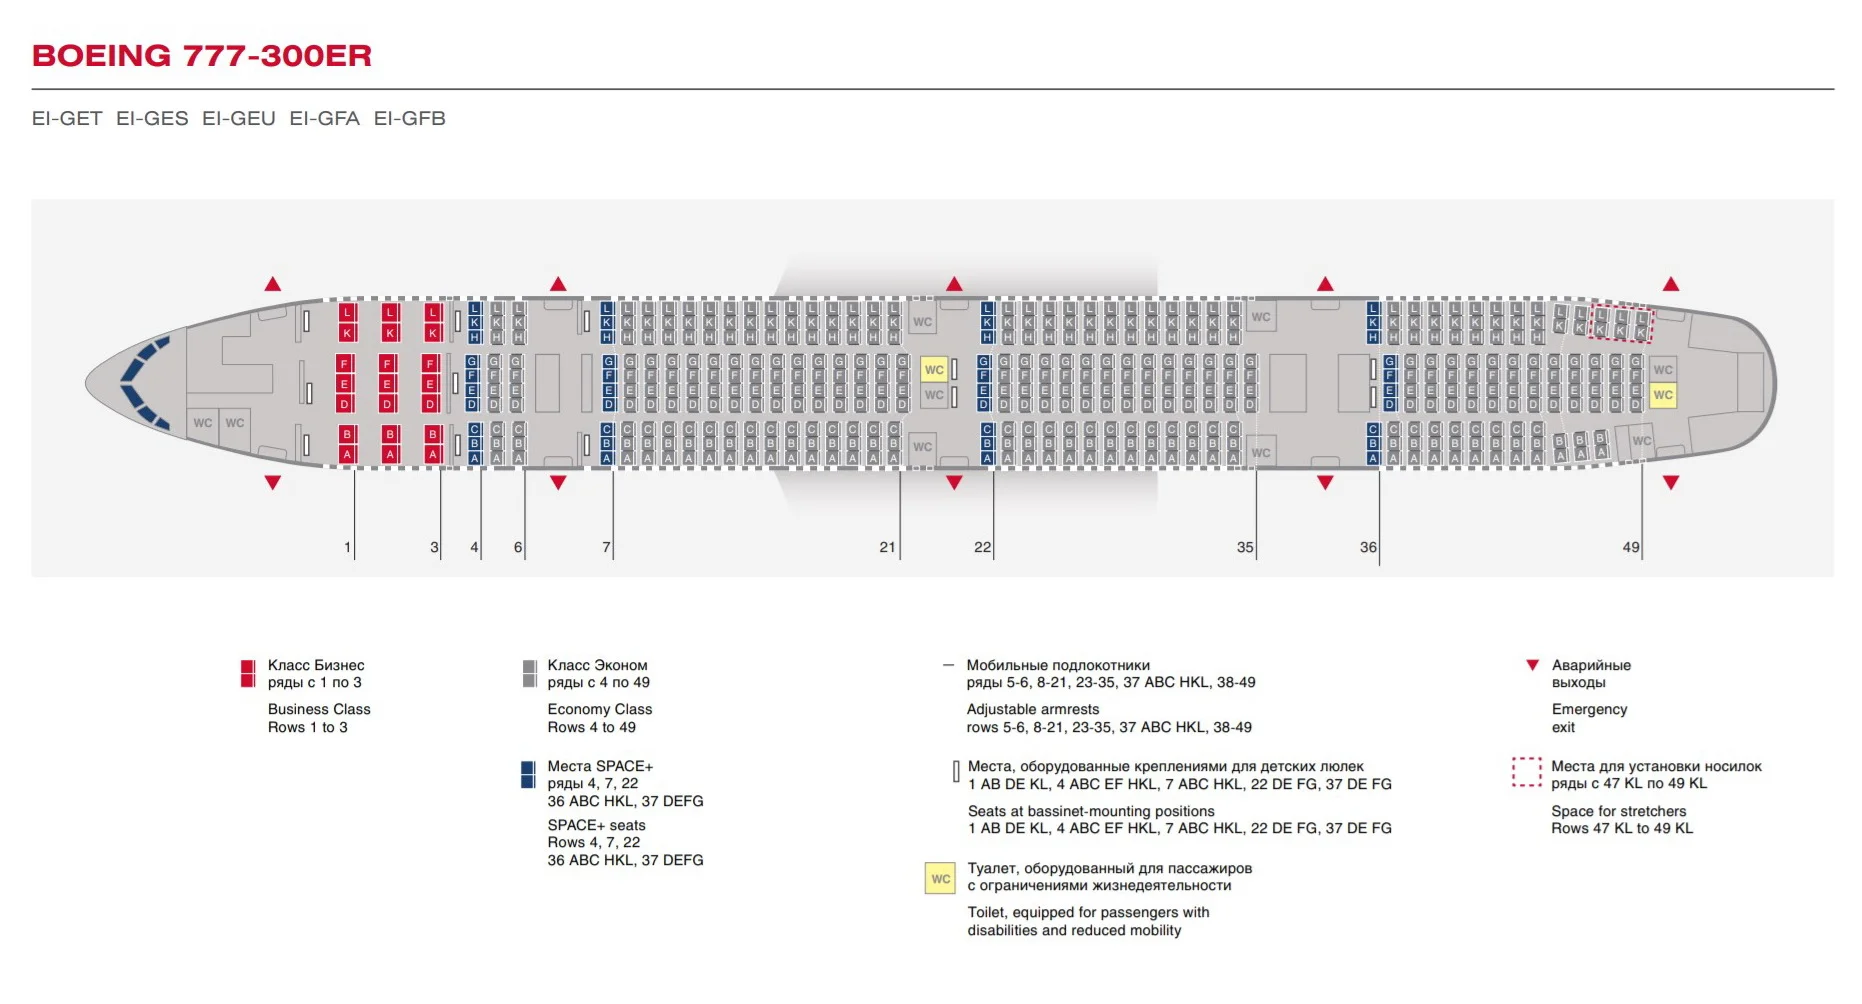 Обзор Boeing 777 а/к Россия — фото, видео, схема салона, питание, системаразвлечений